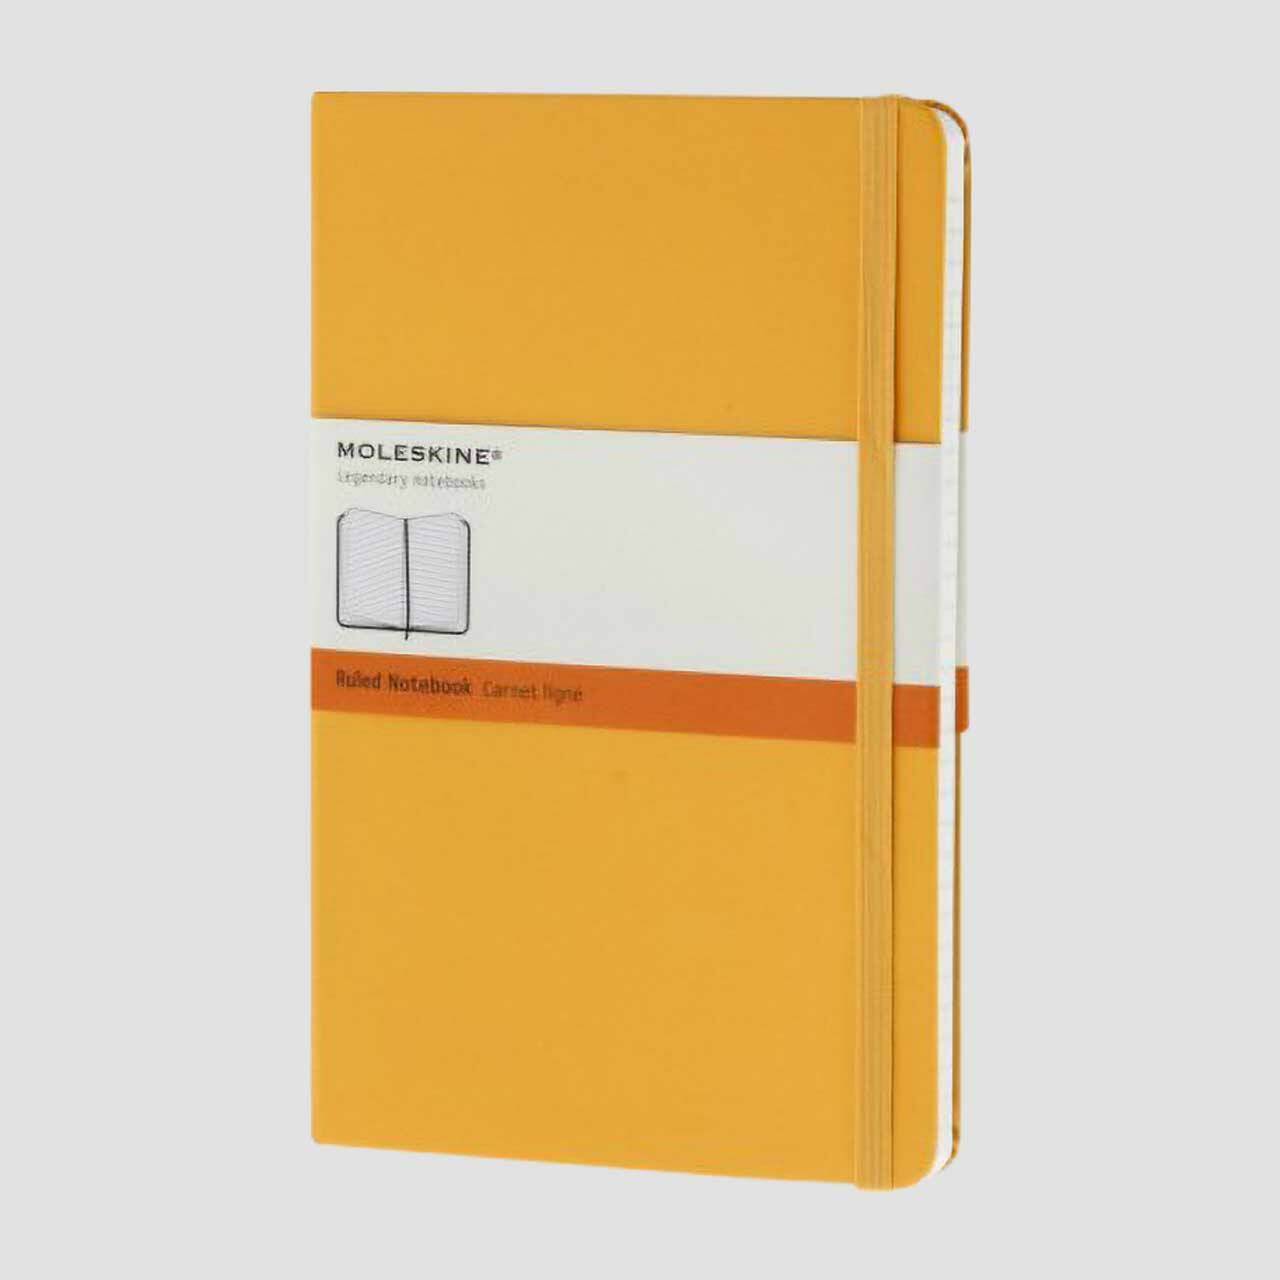 Moleskine notitieboek hard cover met banderol, geel